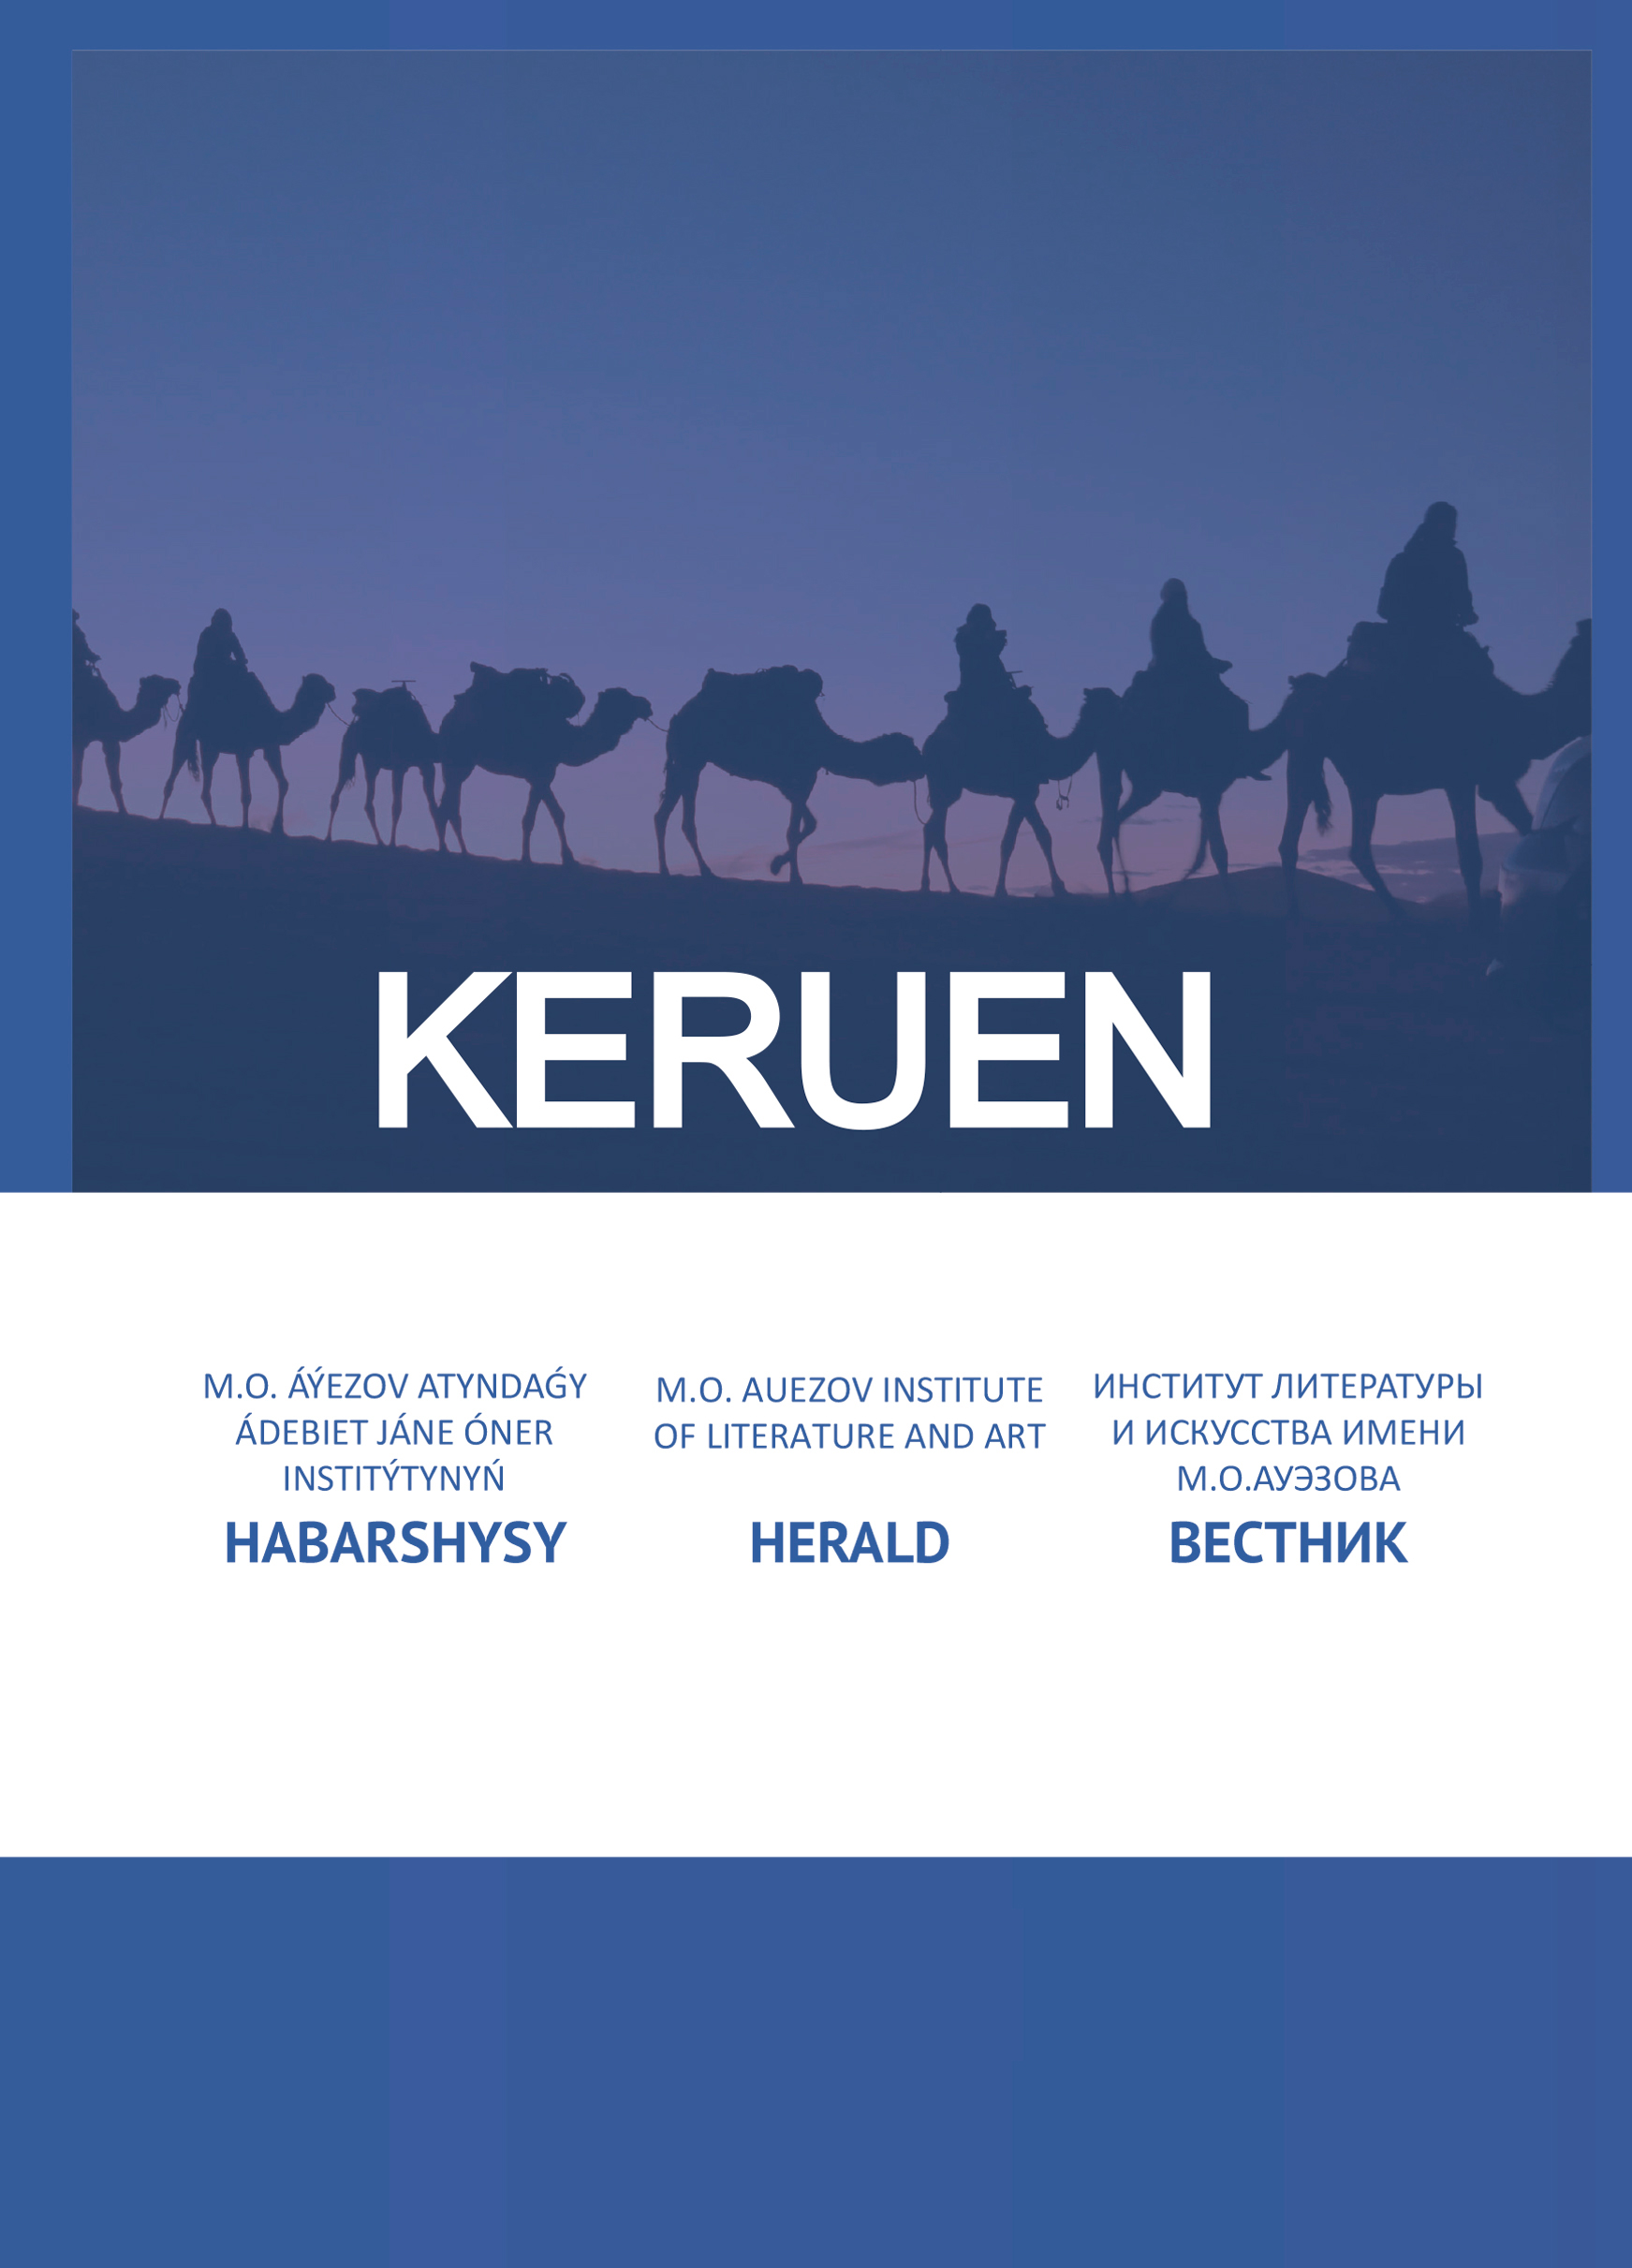 "KERUEN" SCIENTIFIC JOURNAL